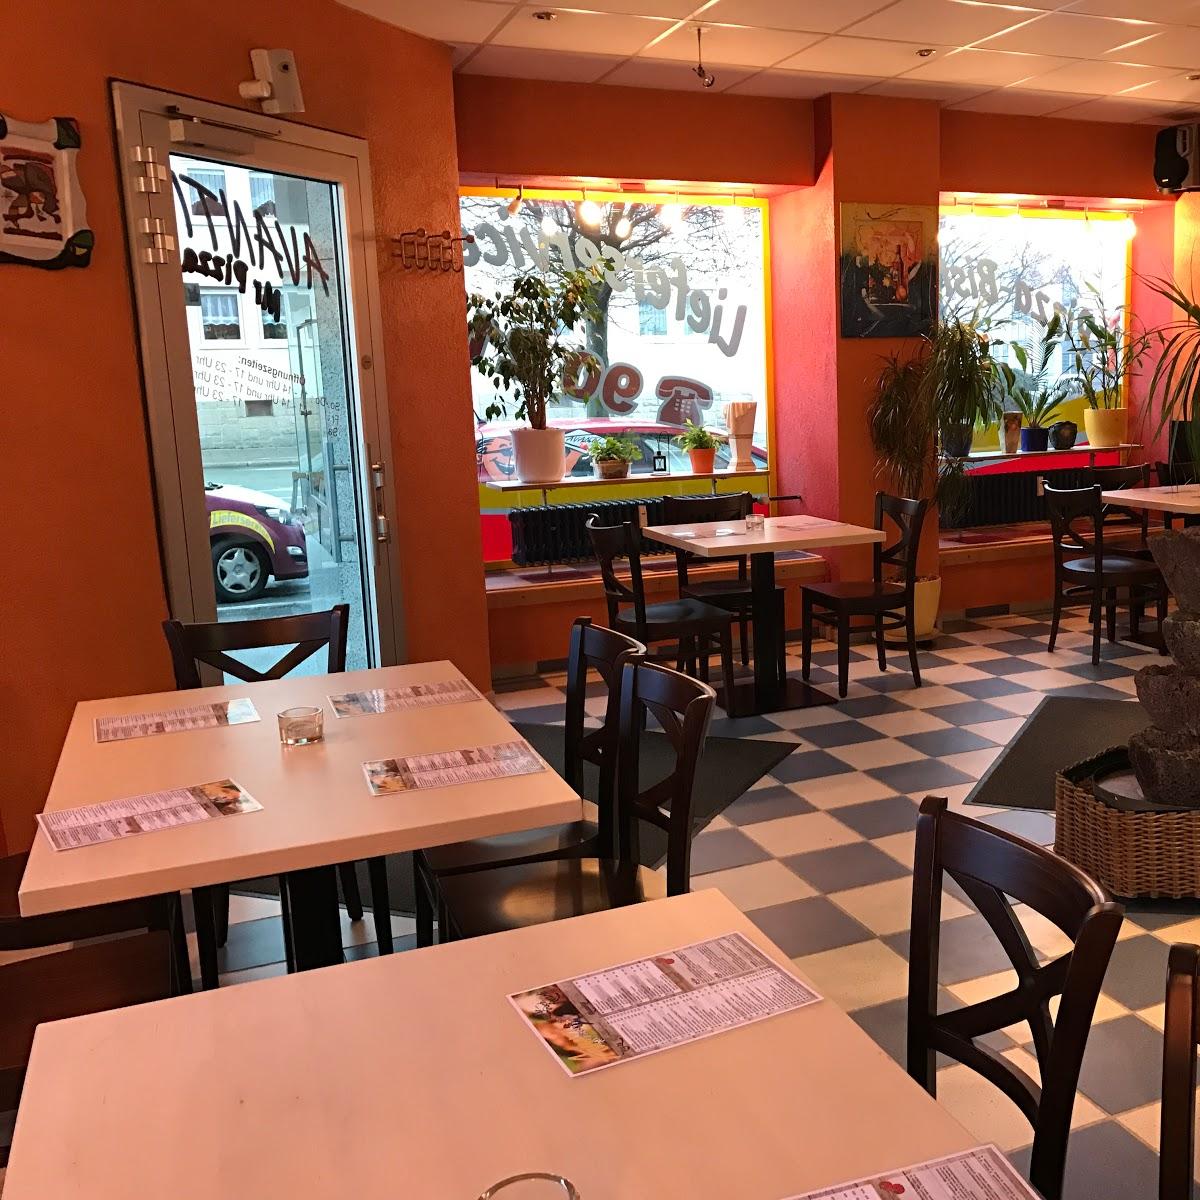 Restaurant "La Piazza  - Bistro - Restaurant" in Hof